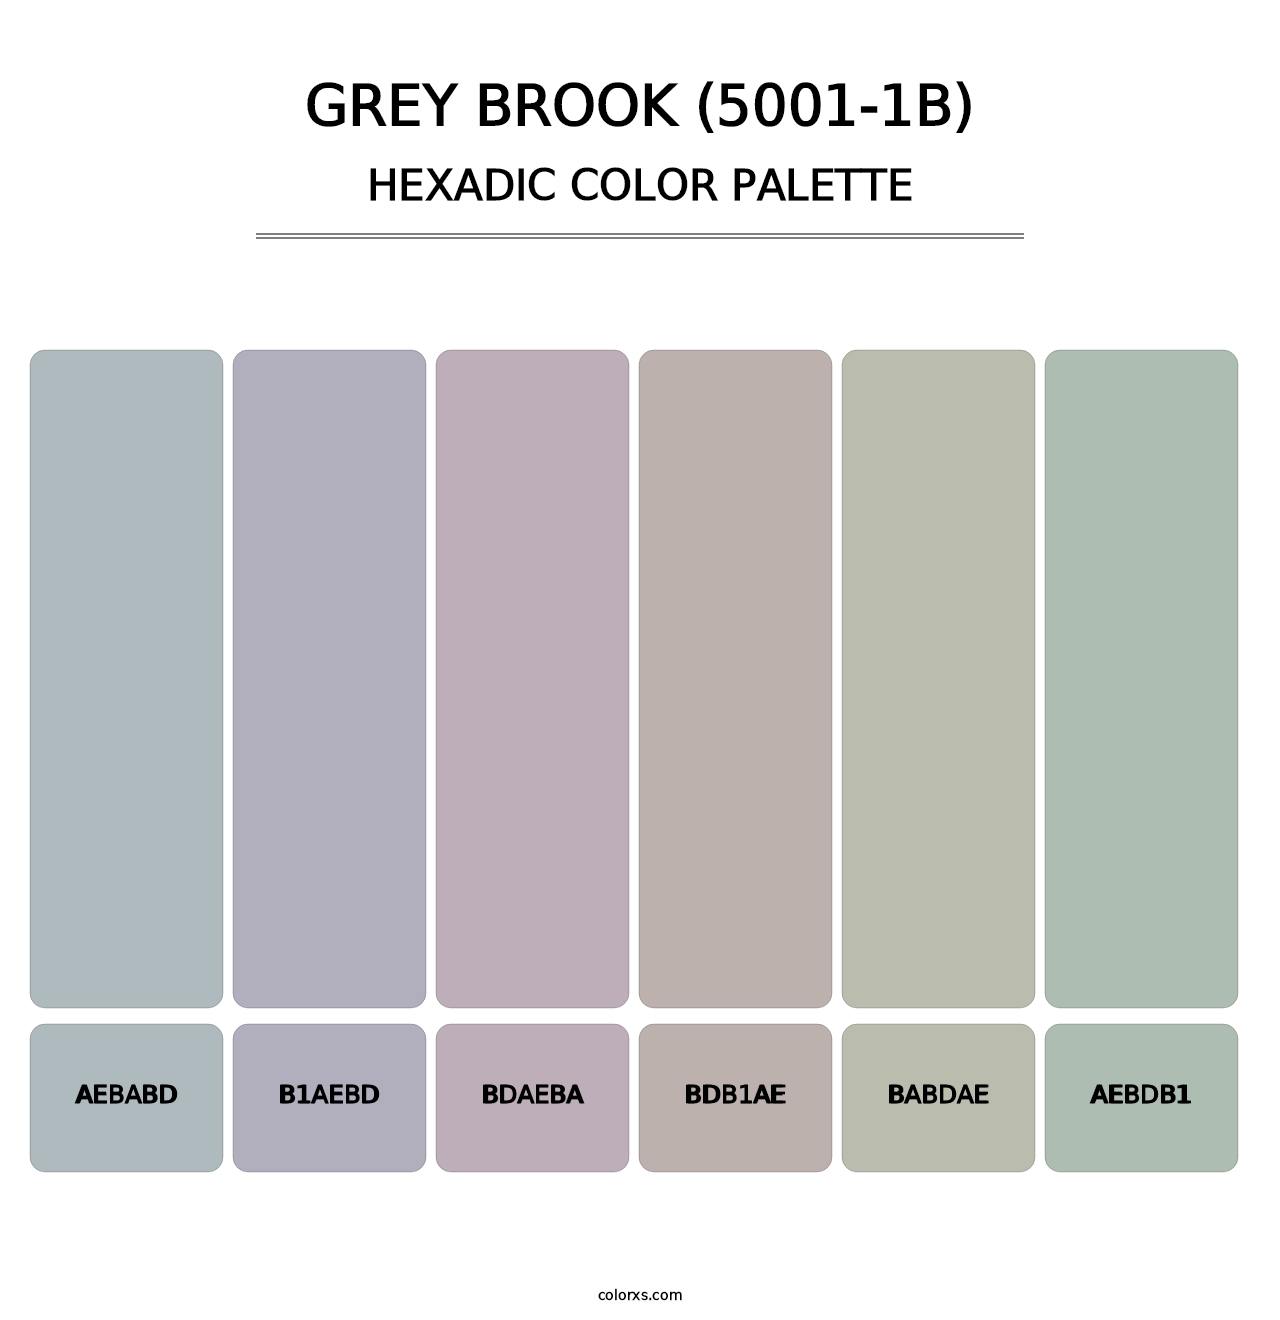 Grey Brook (5001-1B) - Hexadic Color Palette